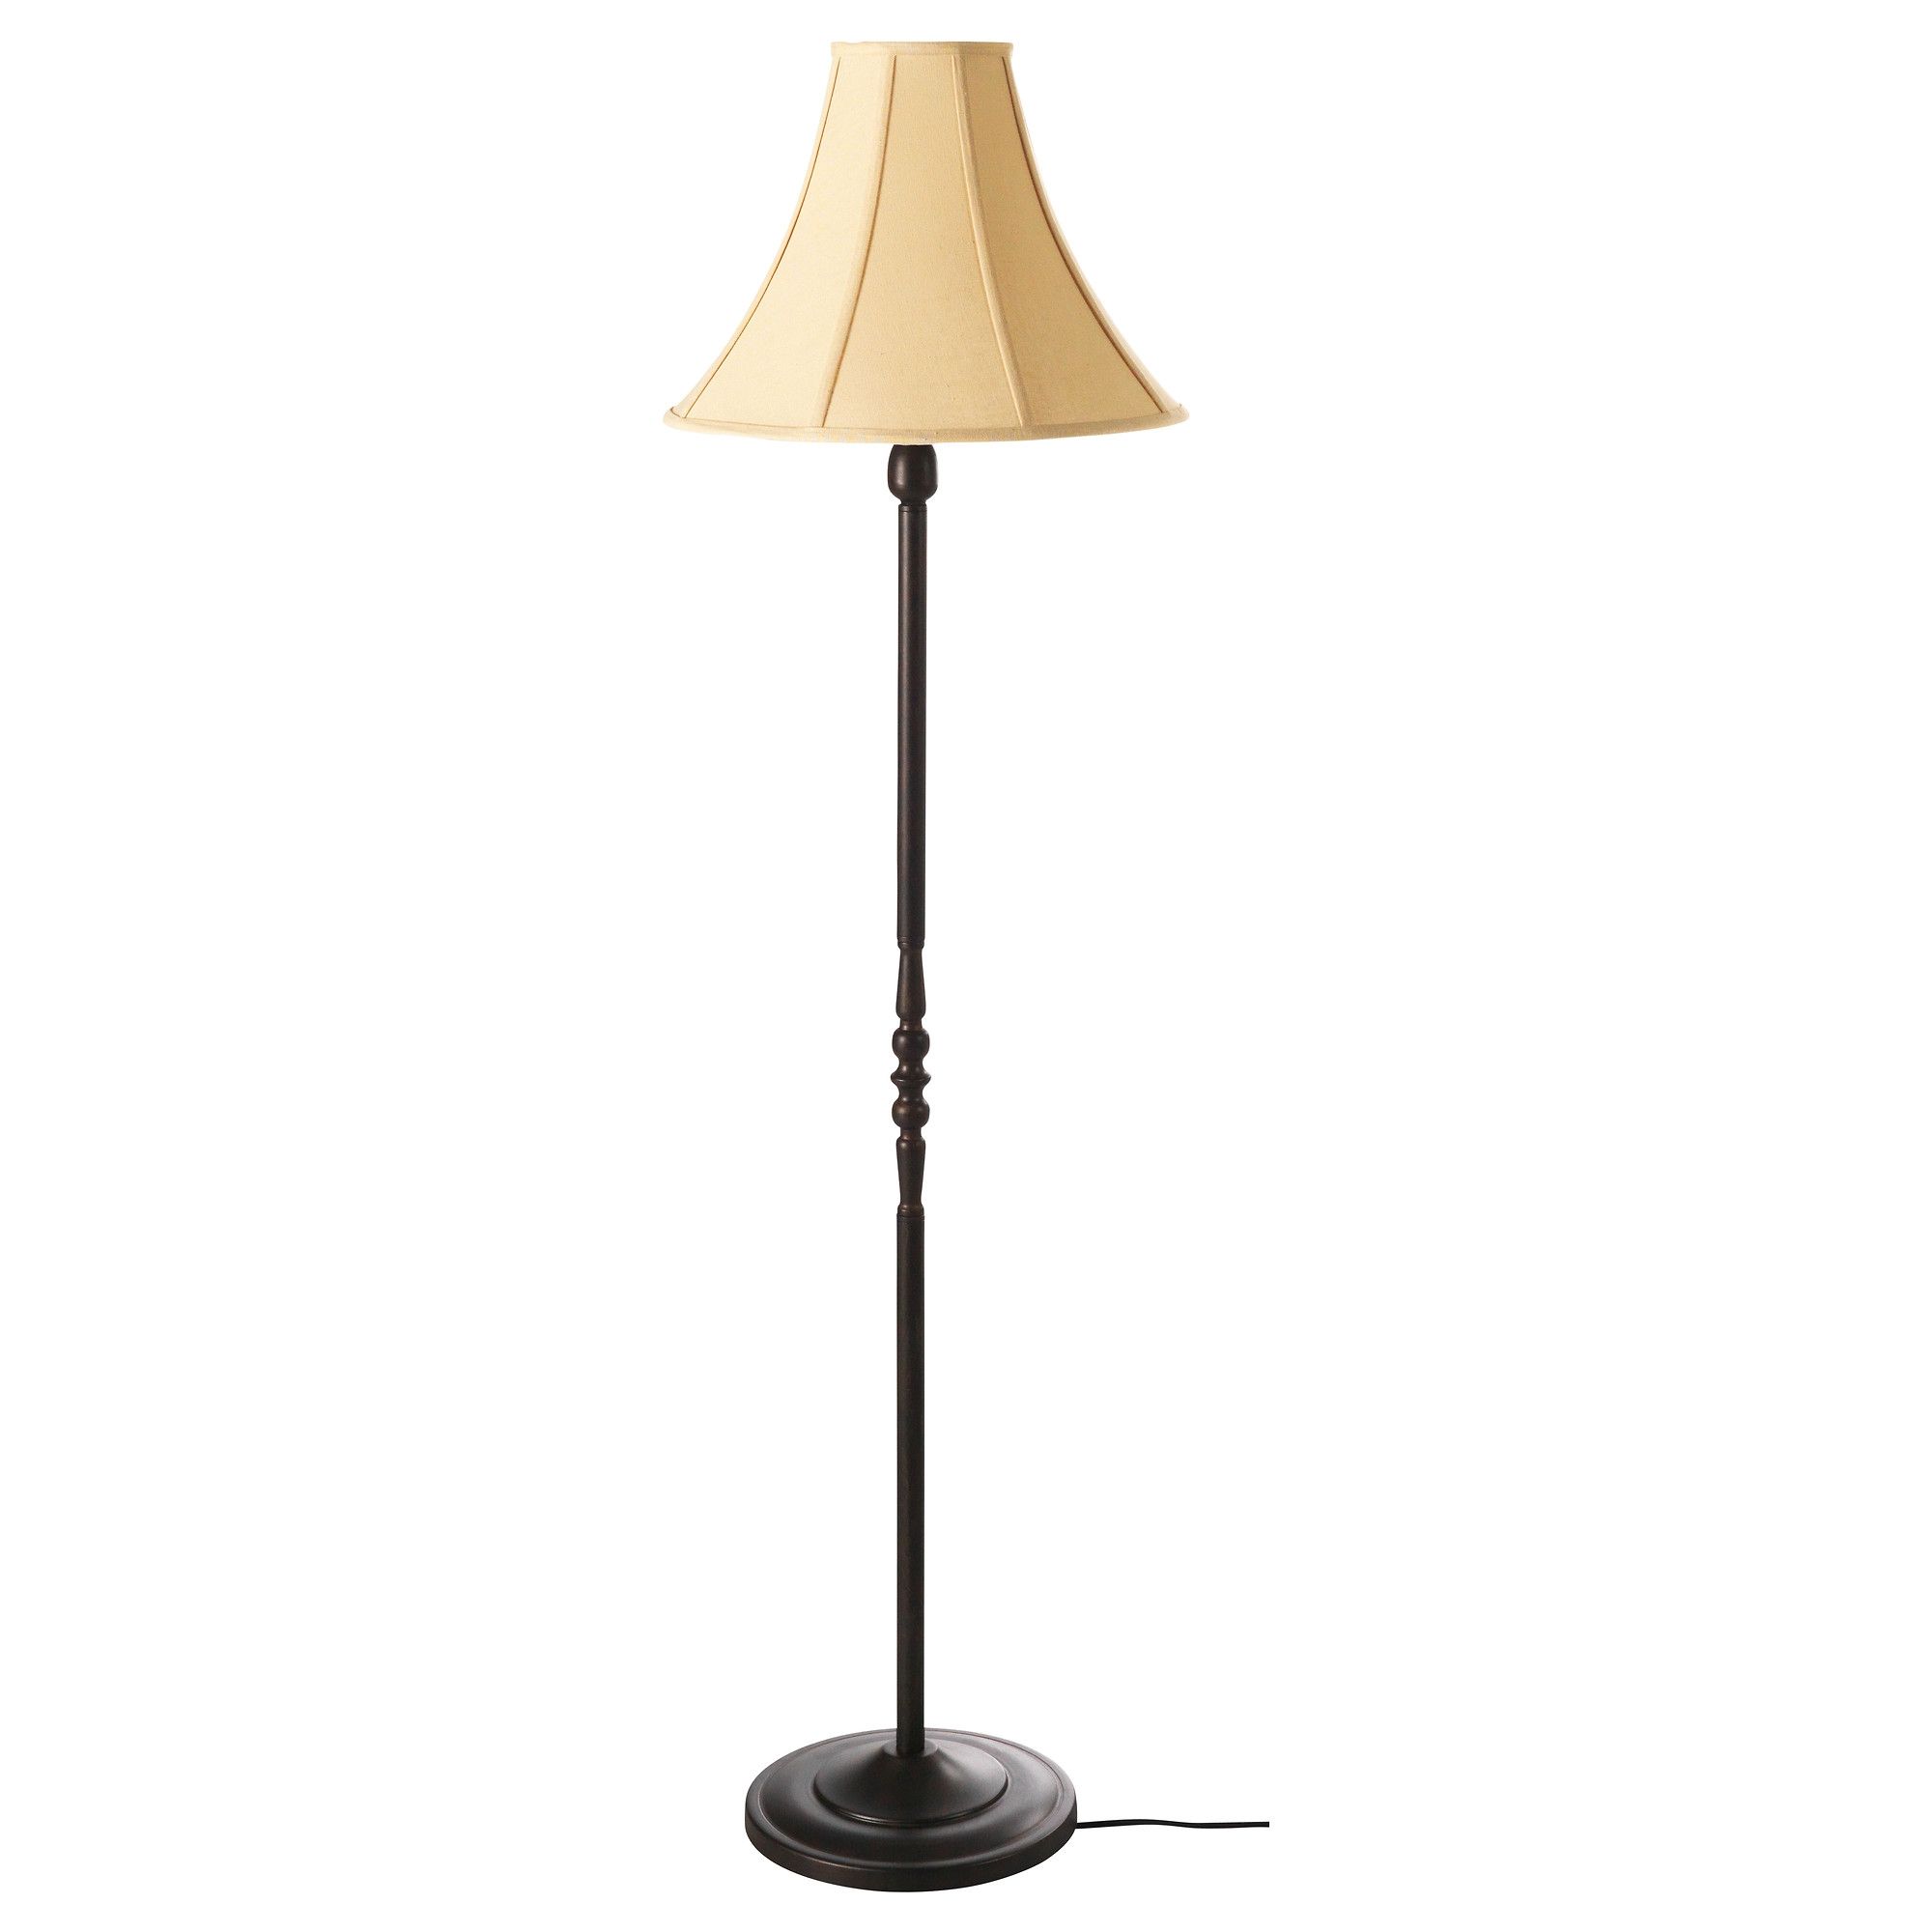 Standing Chandelier Floor Lamp Lighting And Ceiling Fans With Standing Chandelier Floor Lamps (View 17 of 25)